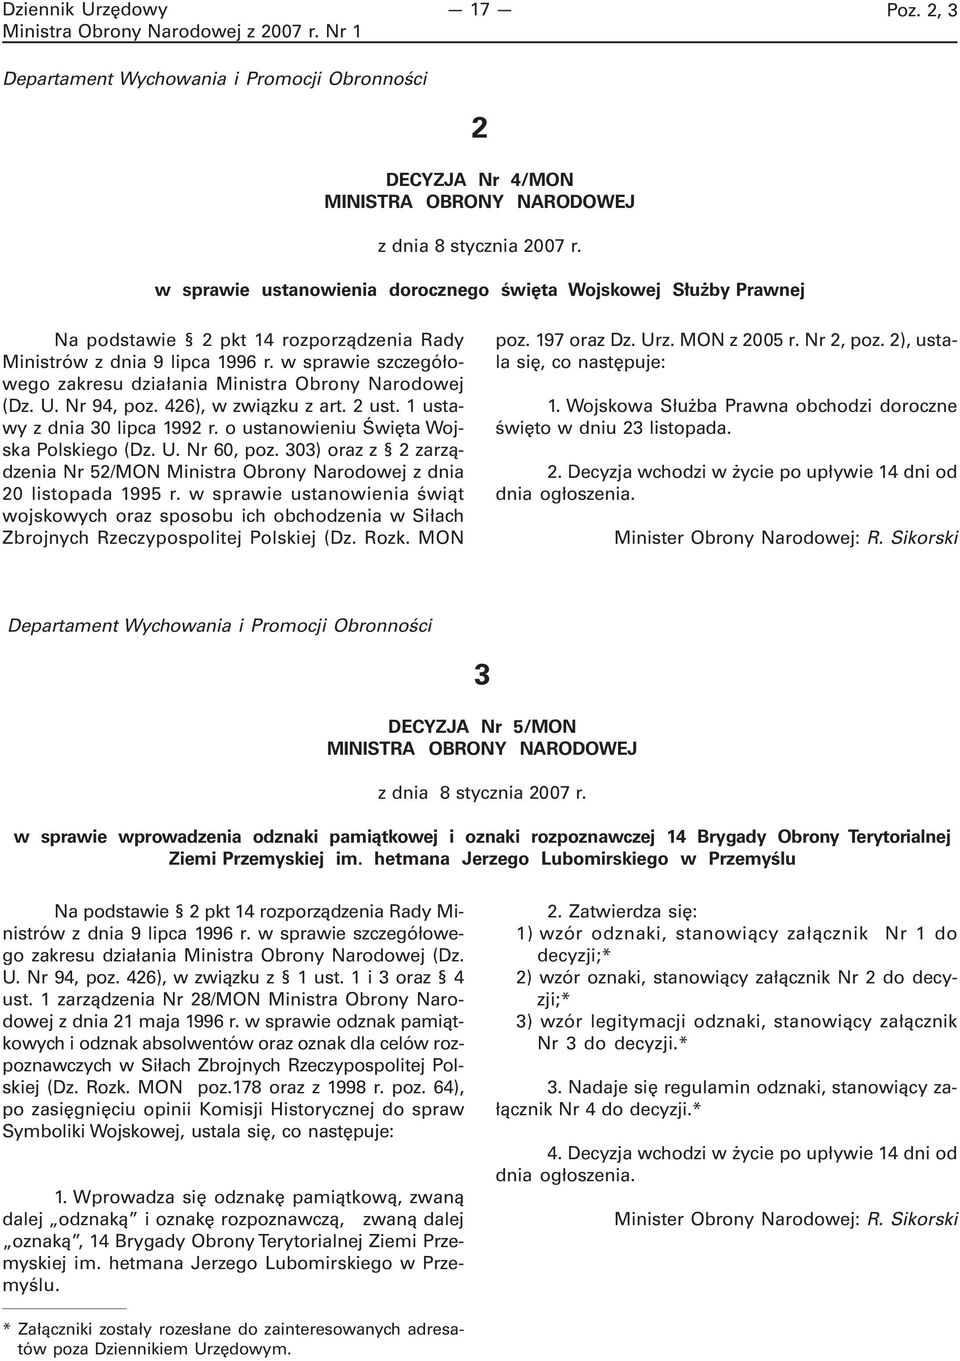 w sprawie szczegółowego zakresu działania Ministra Obrony Narodowej (Dz. U. Nr 94, poz. 426), w związku z art. 2 ust. 1 ustawy z dnia 30 lipca 1992 r. o ustanowieniu Święta Wojska Polskiego (Dz. U. Nr 60, poz.